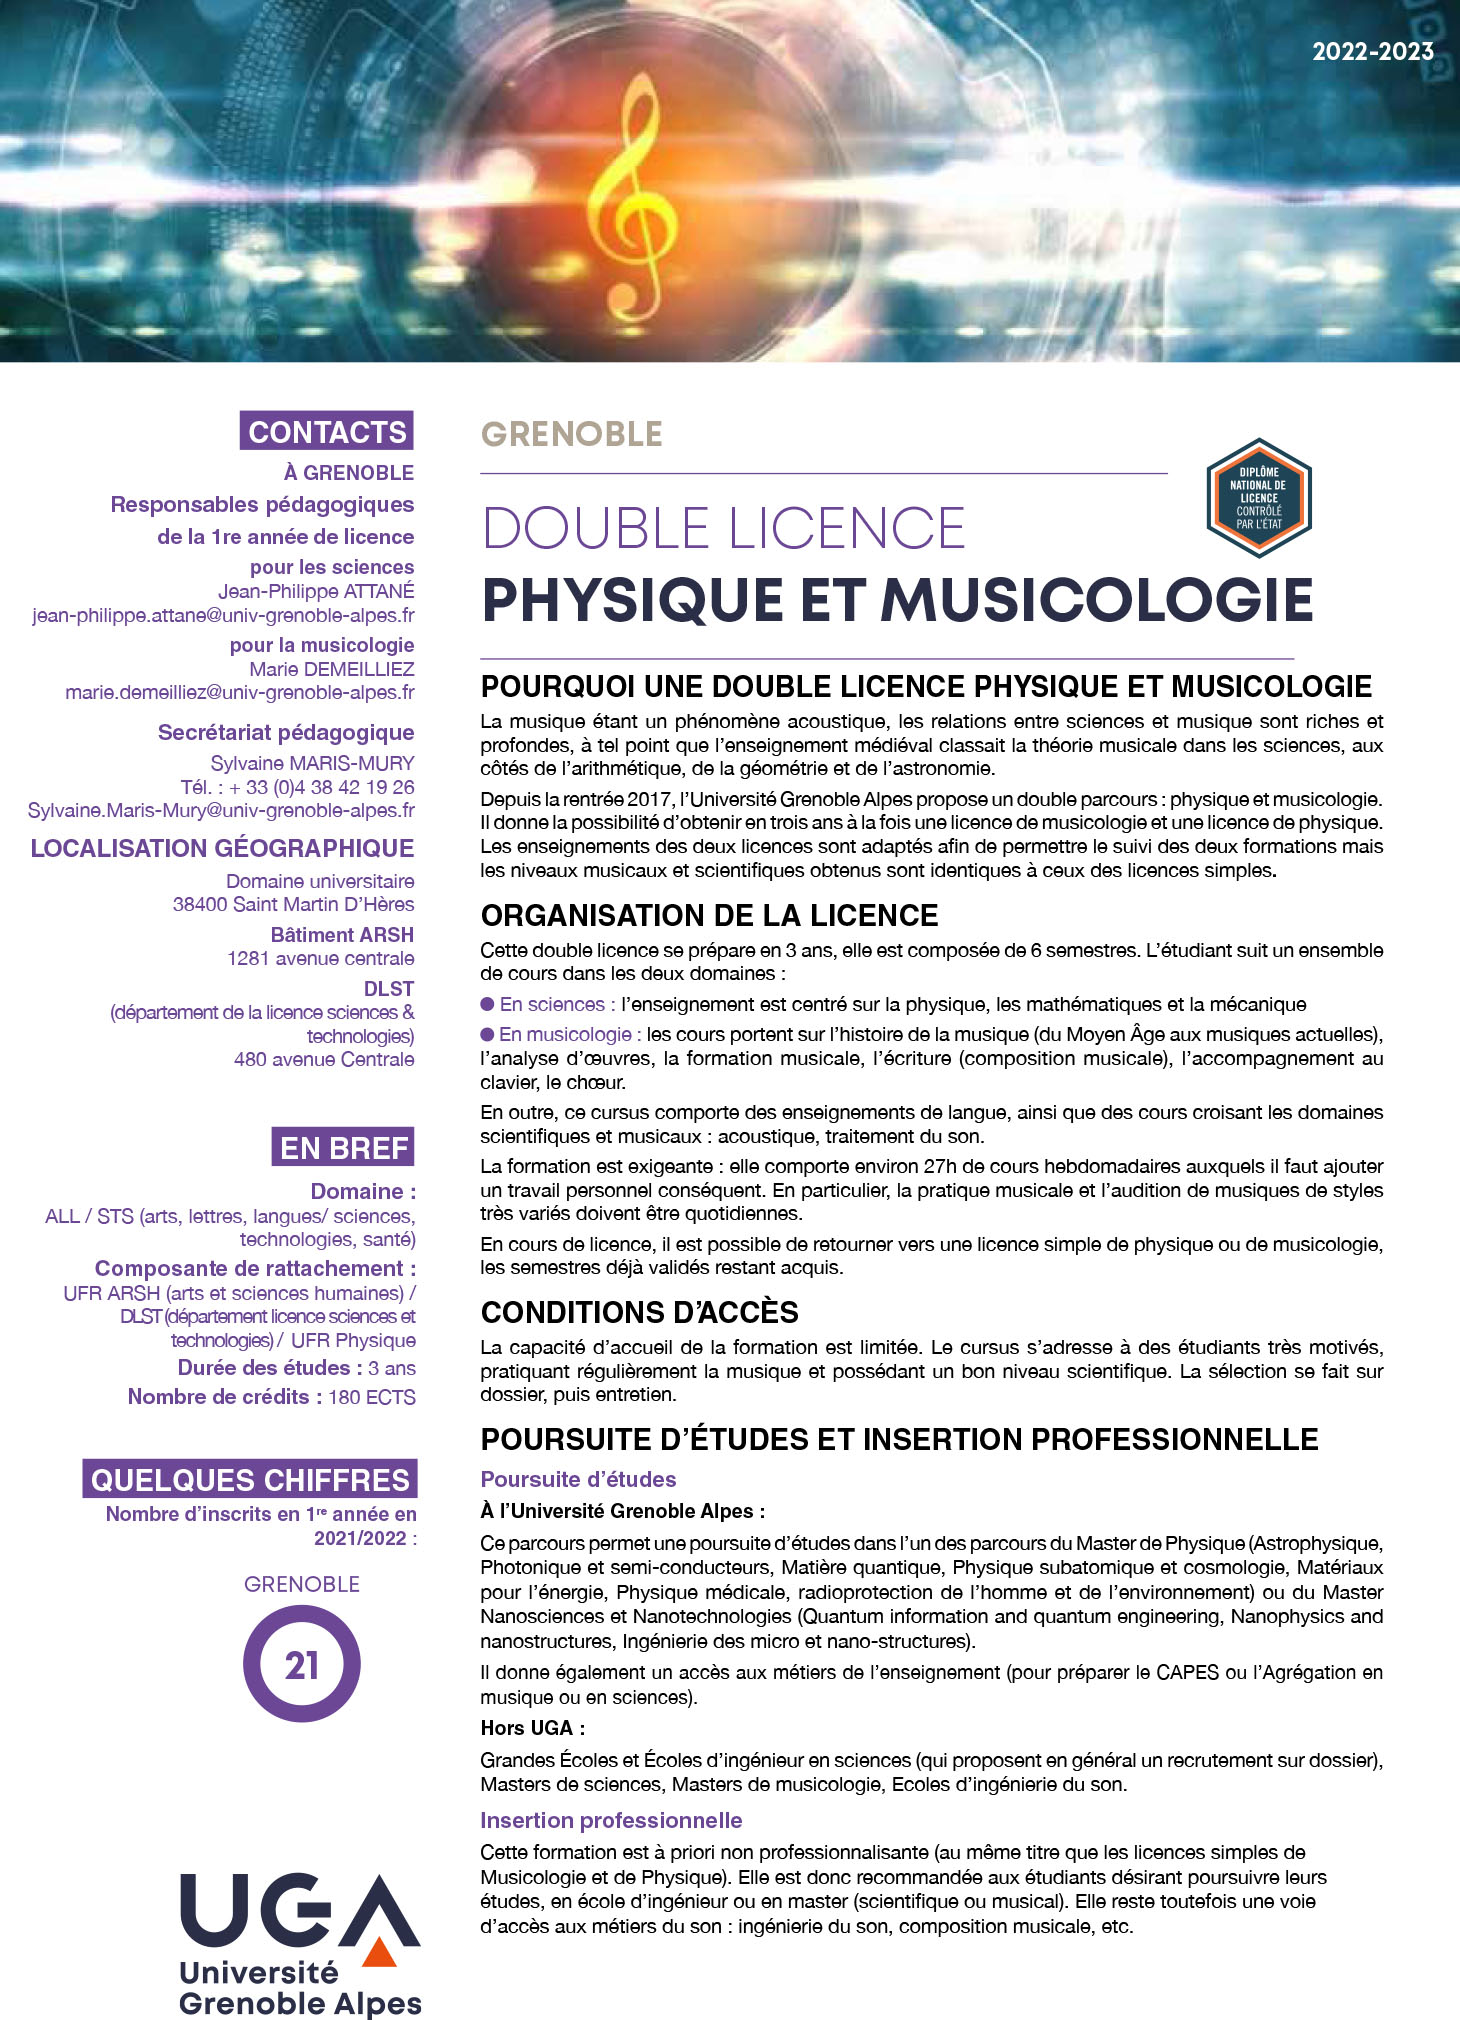 Licence pysique et musicologie